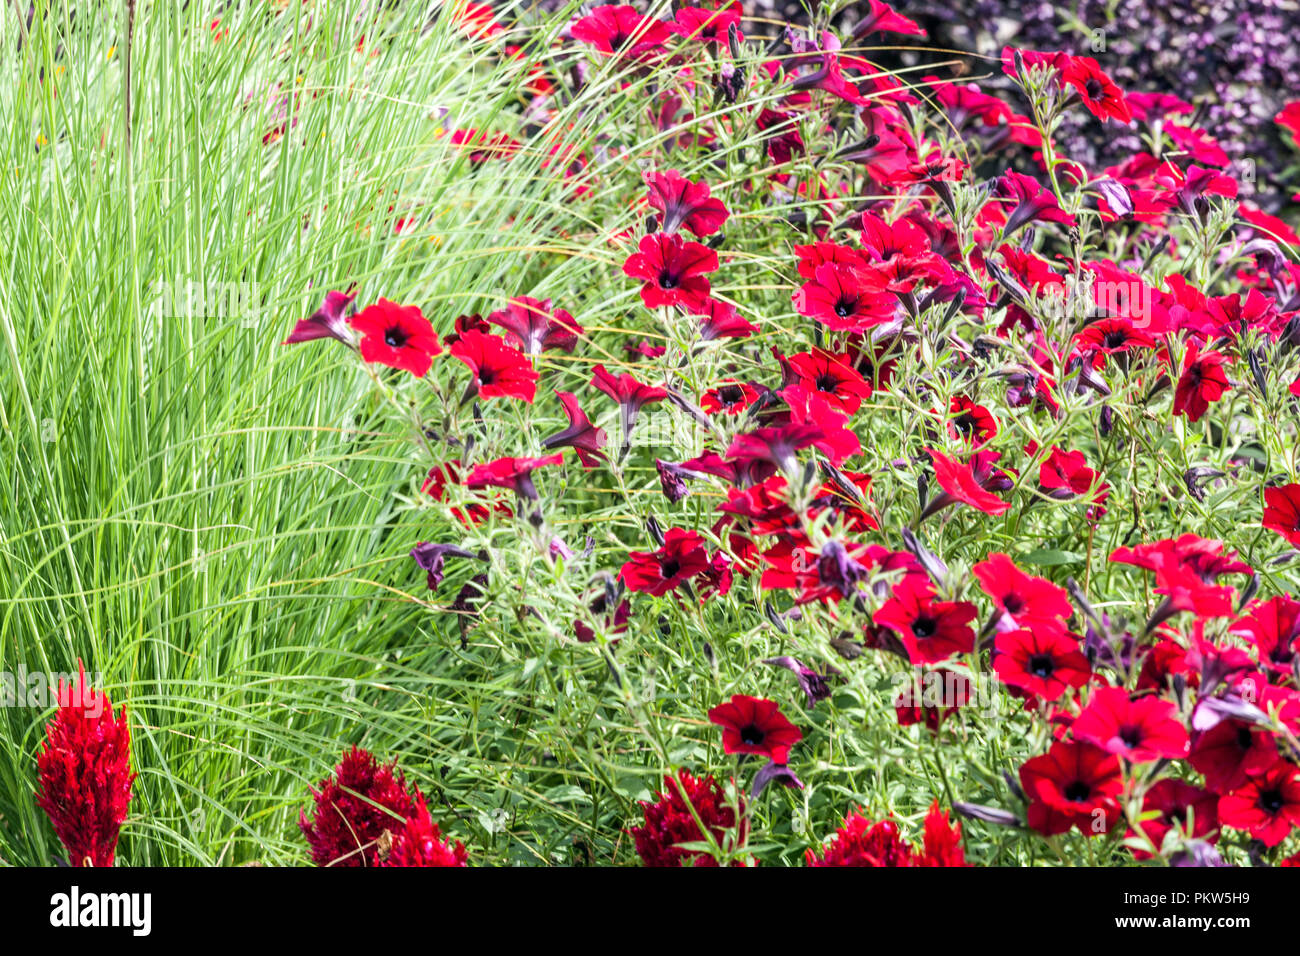 Une combinaison de couleurs d'une fleur d'été lit dans un chalet jardin, Célosie, pétunia, herbe ornementale, beau jardin de fleurs Banque D'Images